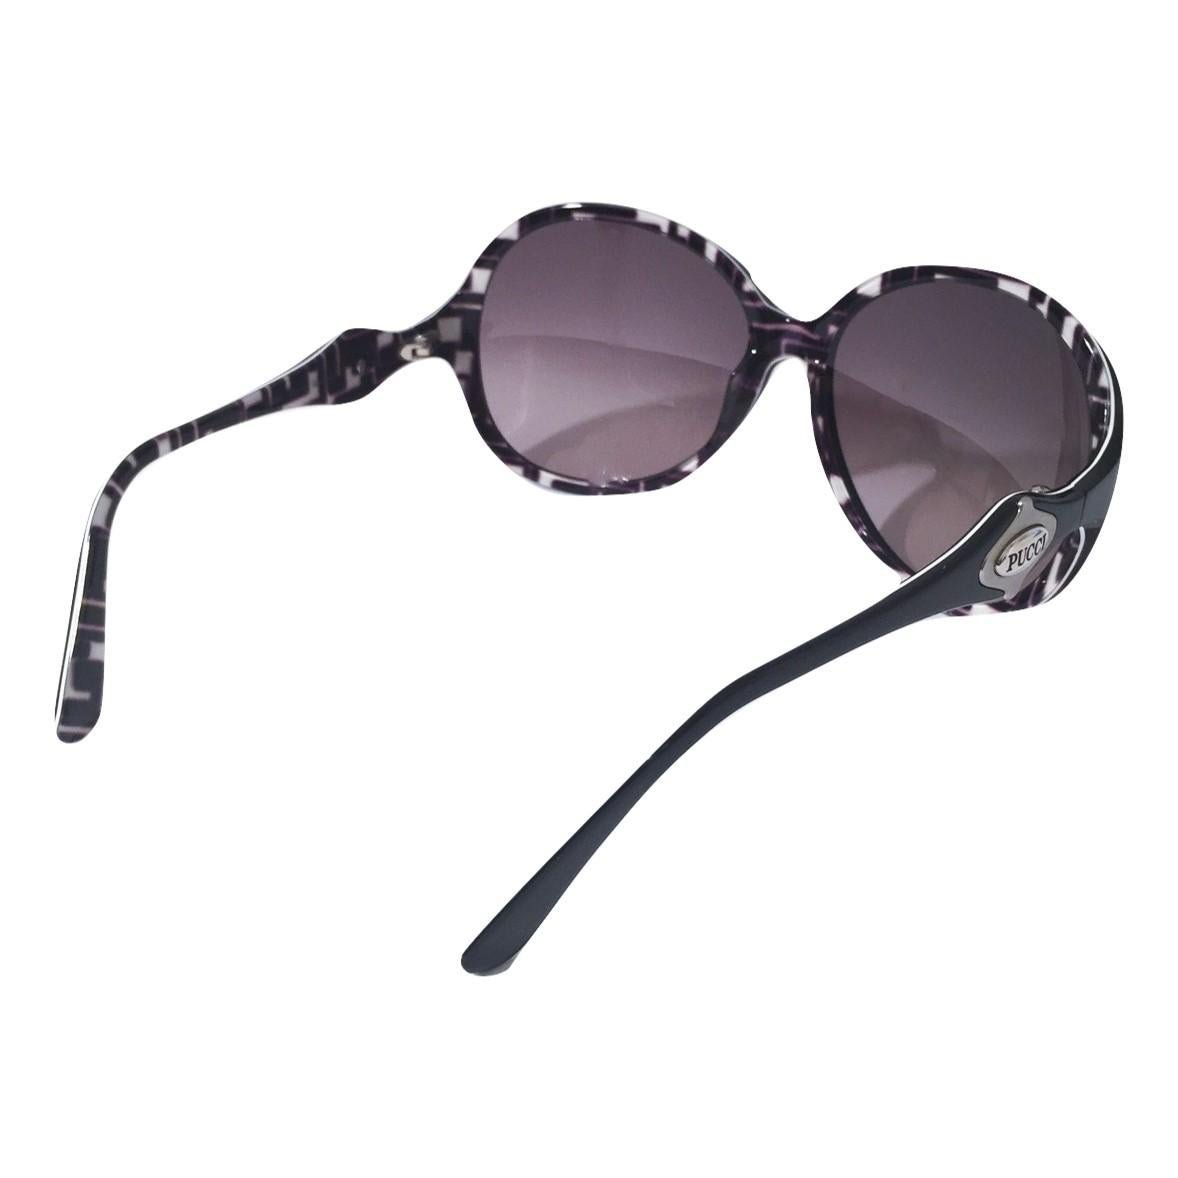 New Emilio Pucci Black Logo Sunglasses With Case & Box 3